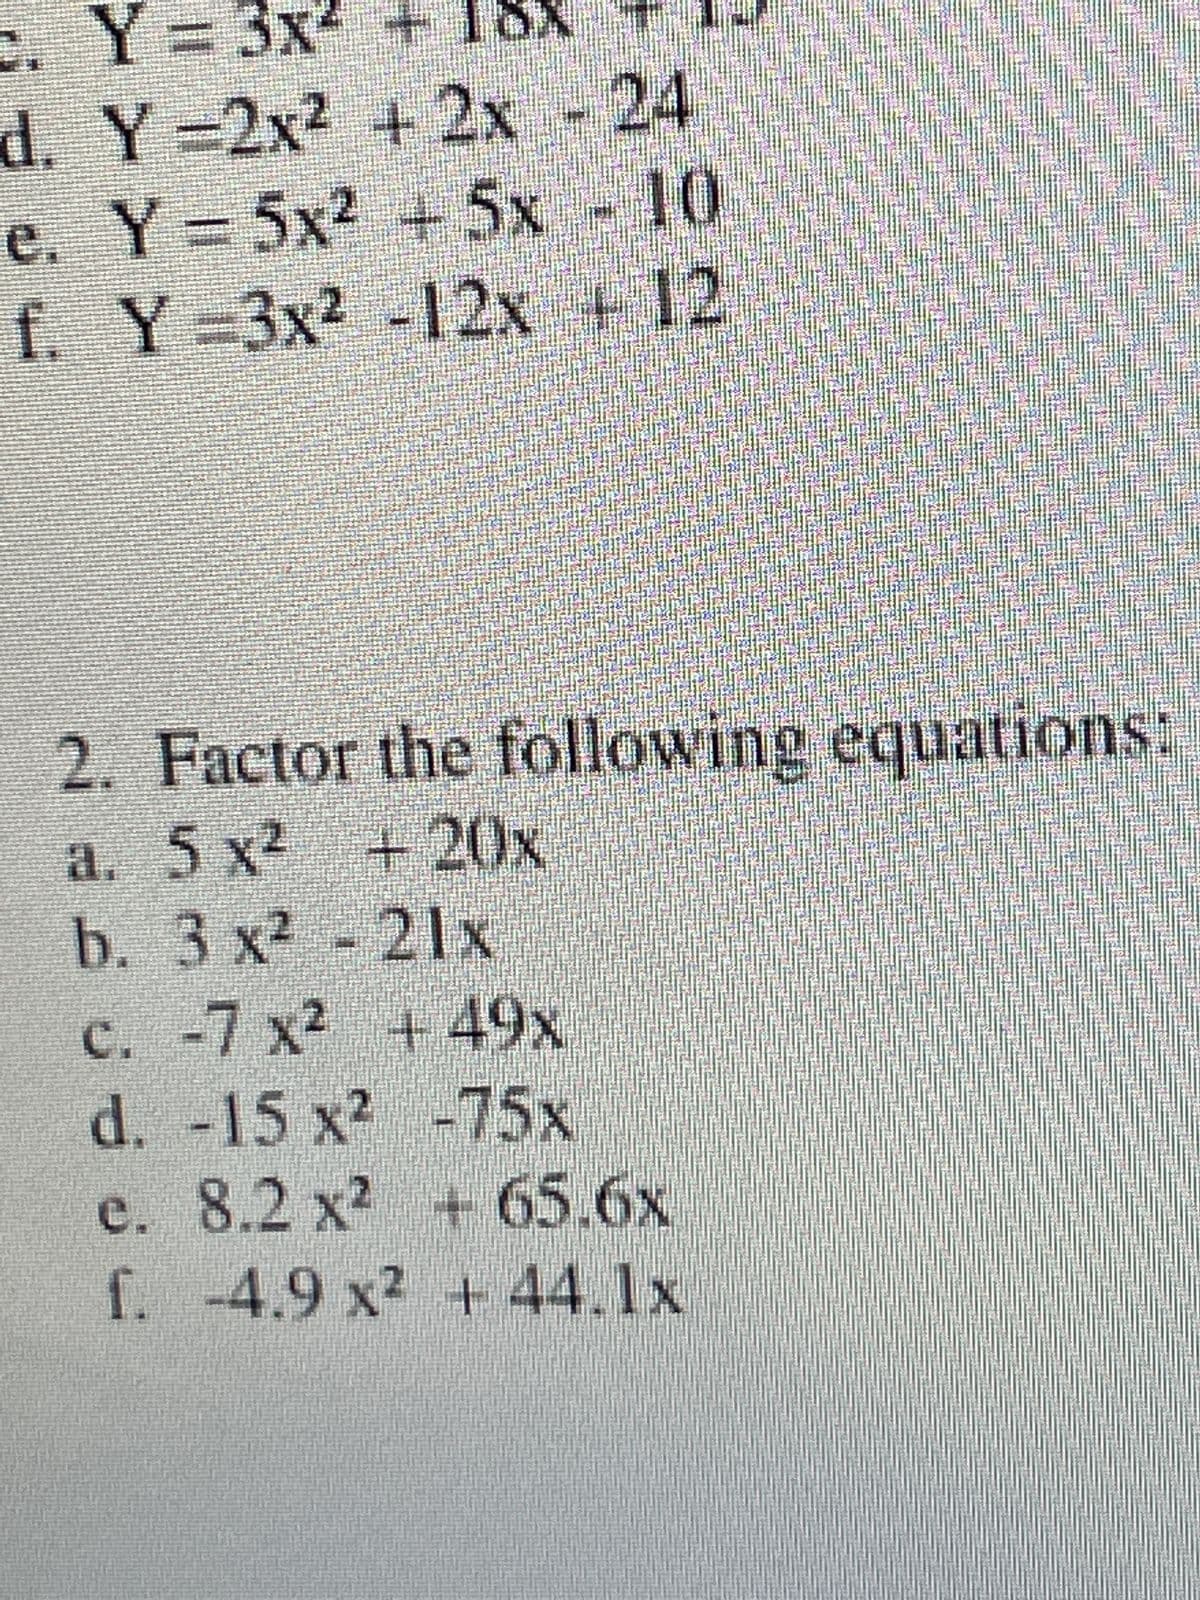 c.
Y = 3x² +
d. Y=2x² + 2x - 24
e. Y=5x² + 5x - 10
Y-3x² -12x + 12
f.
2.
Factor the following equations:
a. 5 x² + 20x
b. 3 x² - 21x
c. -7 x² +49x
d. -15 x²
-75x
e.
f.
8.2 x² + 65.6x
-4.9 x² + 44.1x